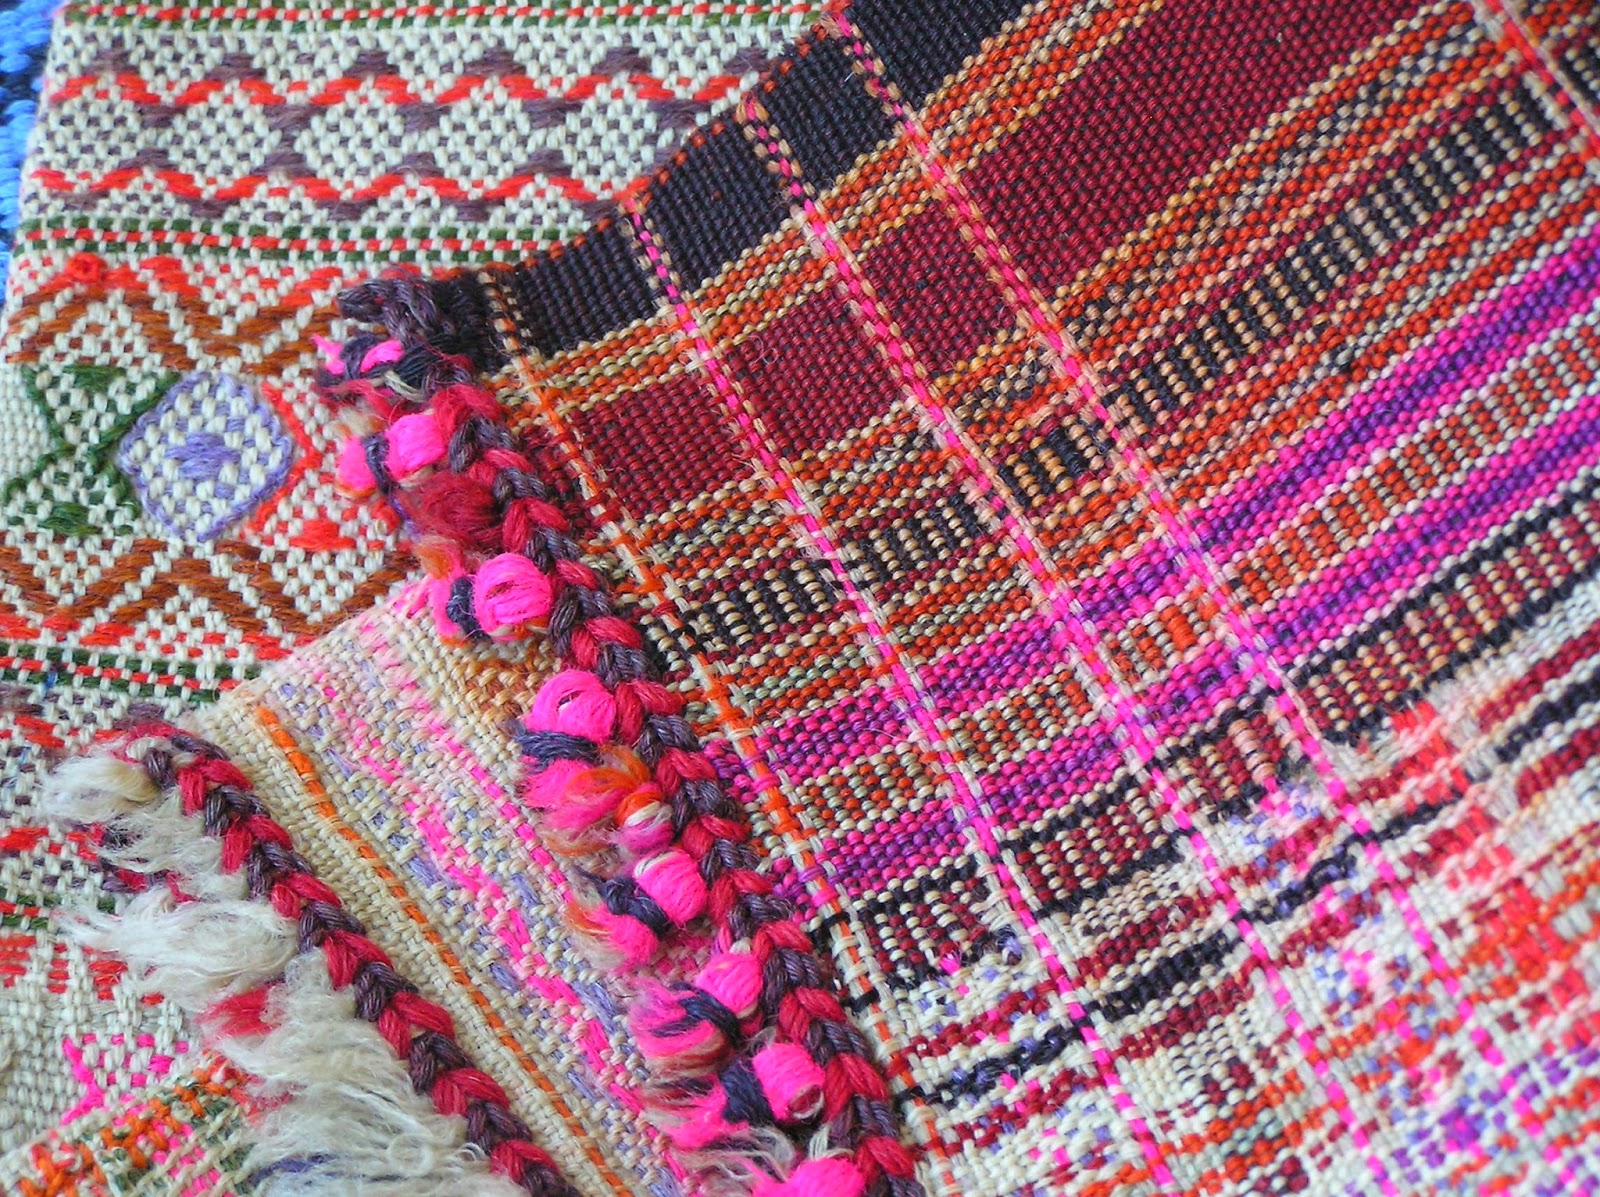 Woollen Shawl, Dhurries and Blanket Weaving of Gujarat